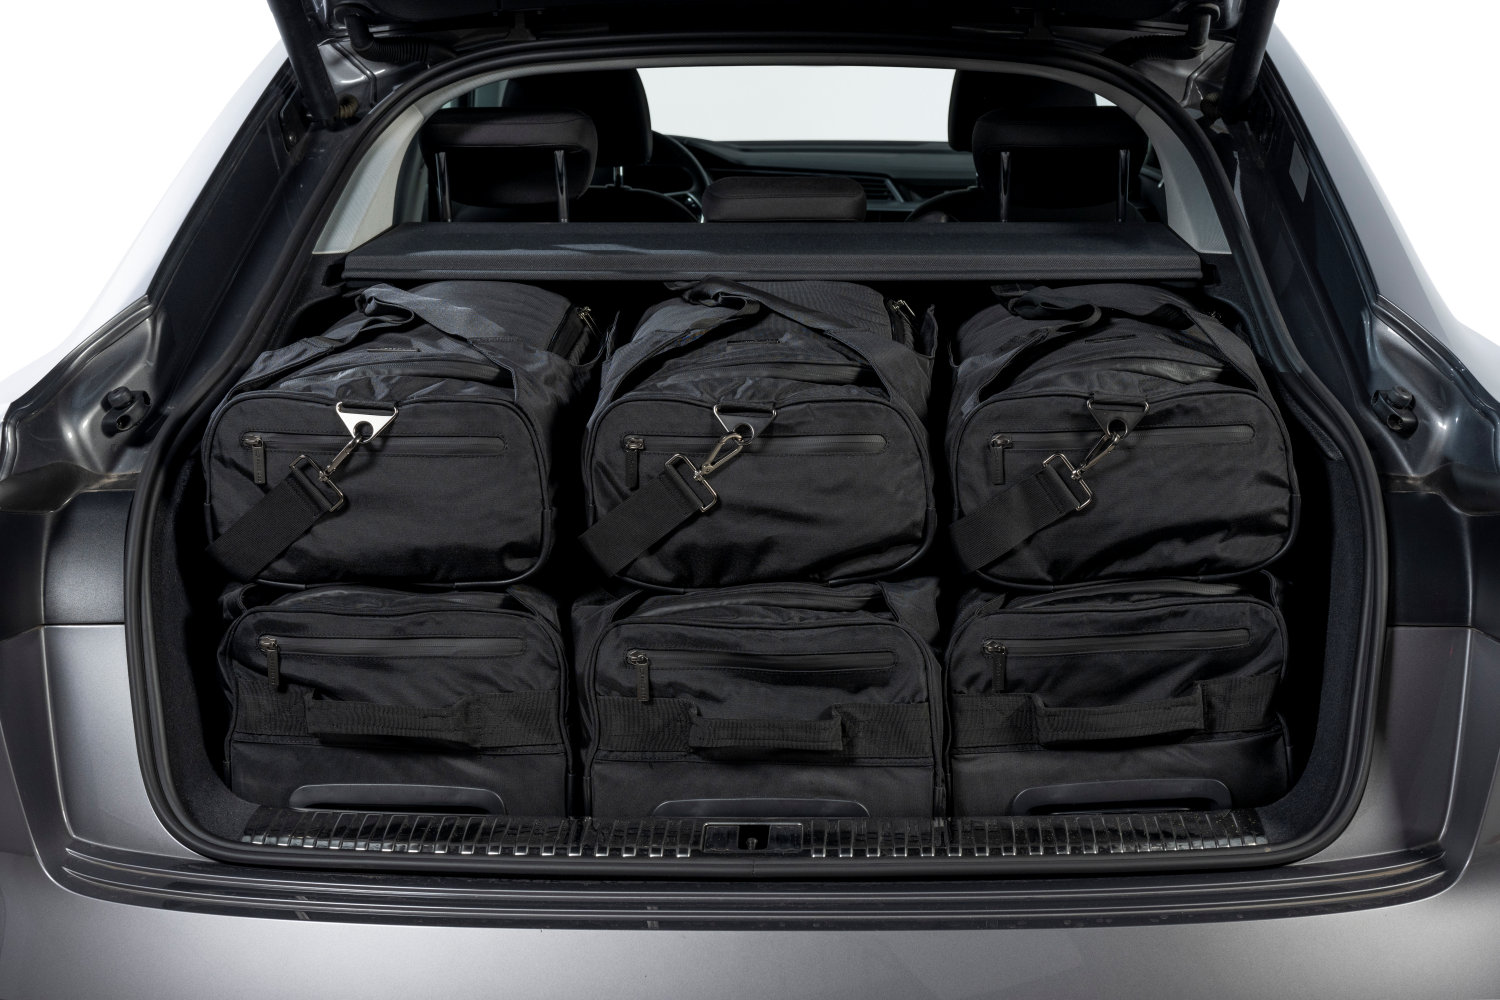 Grâce à un set de sacs de voyages Car-Bags, vous utilisez le coffre de façon optimale